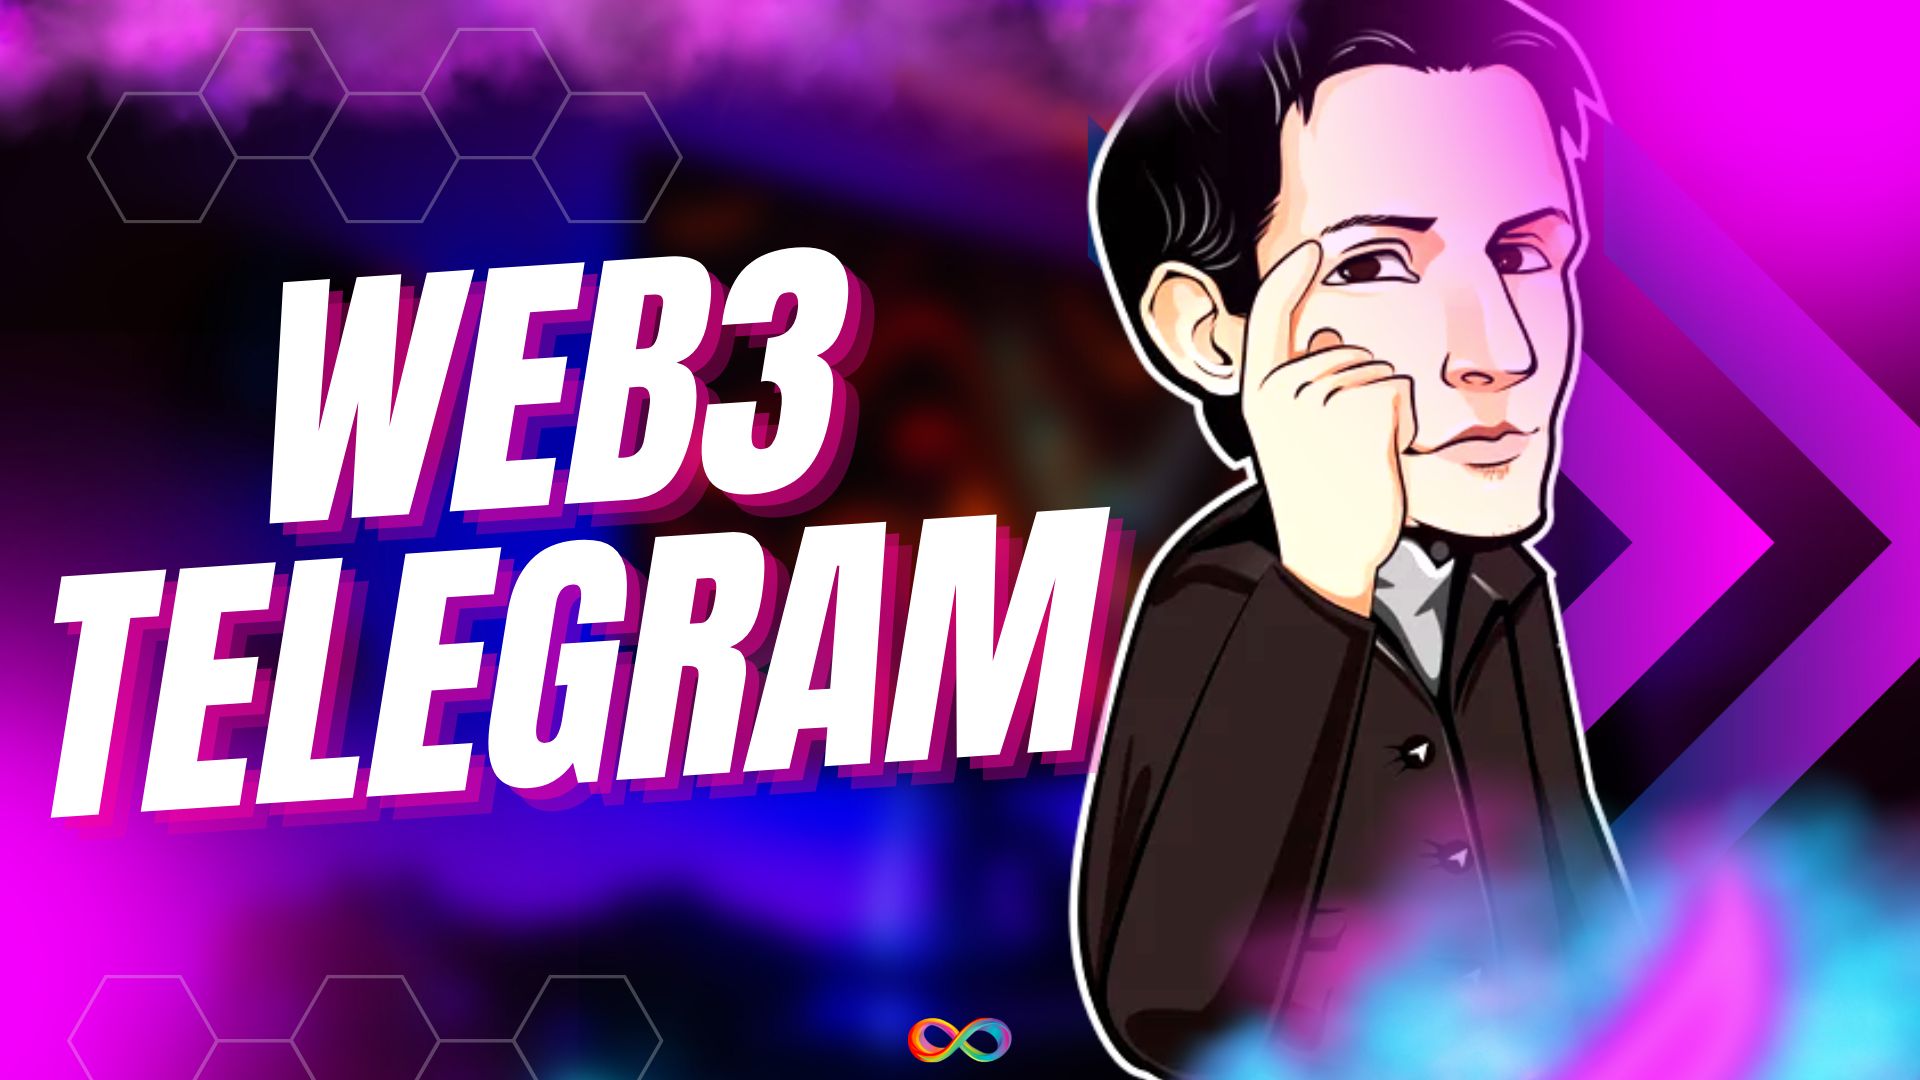 یکپارچه سازی وب 3 توسط مدیر عامل تلگرام